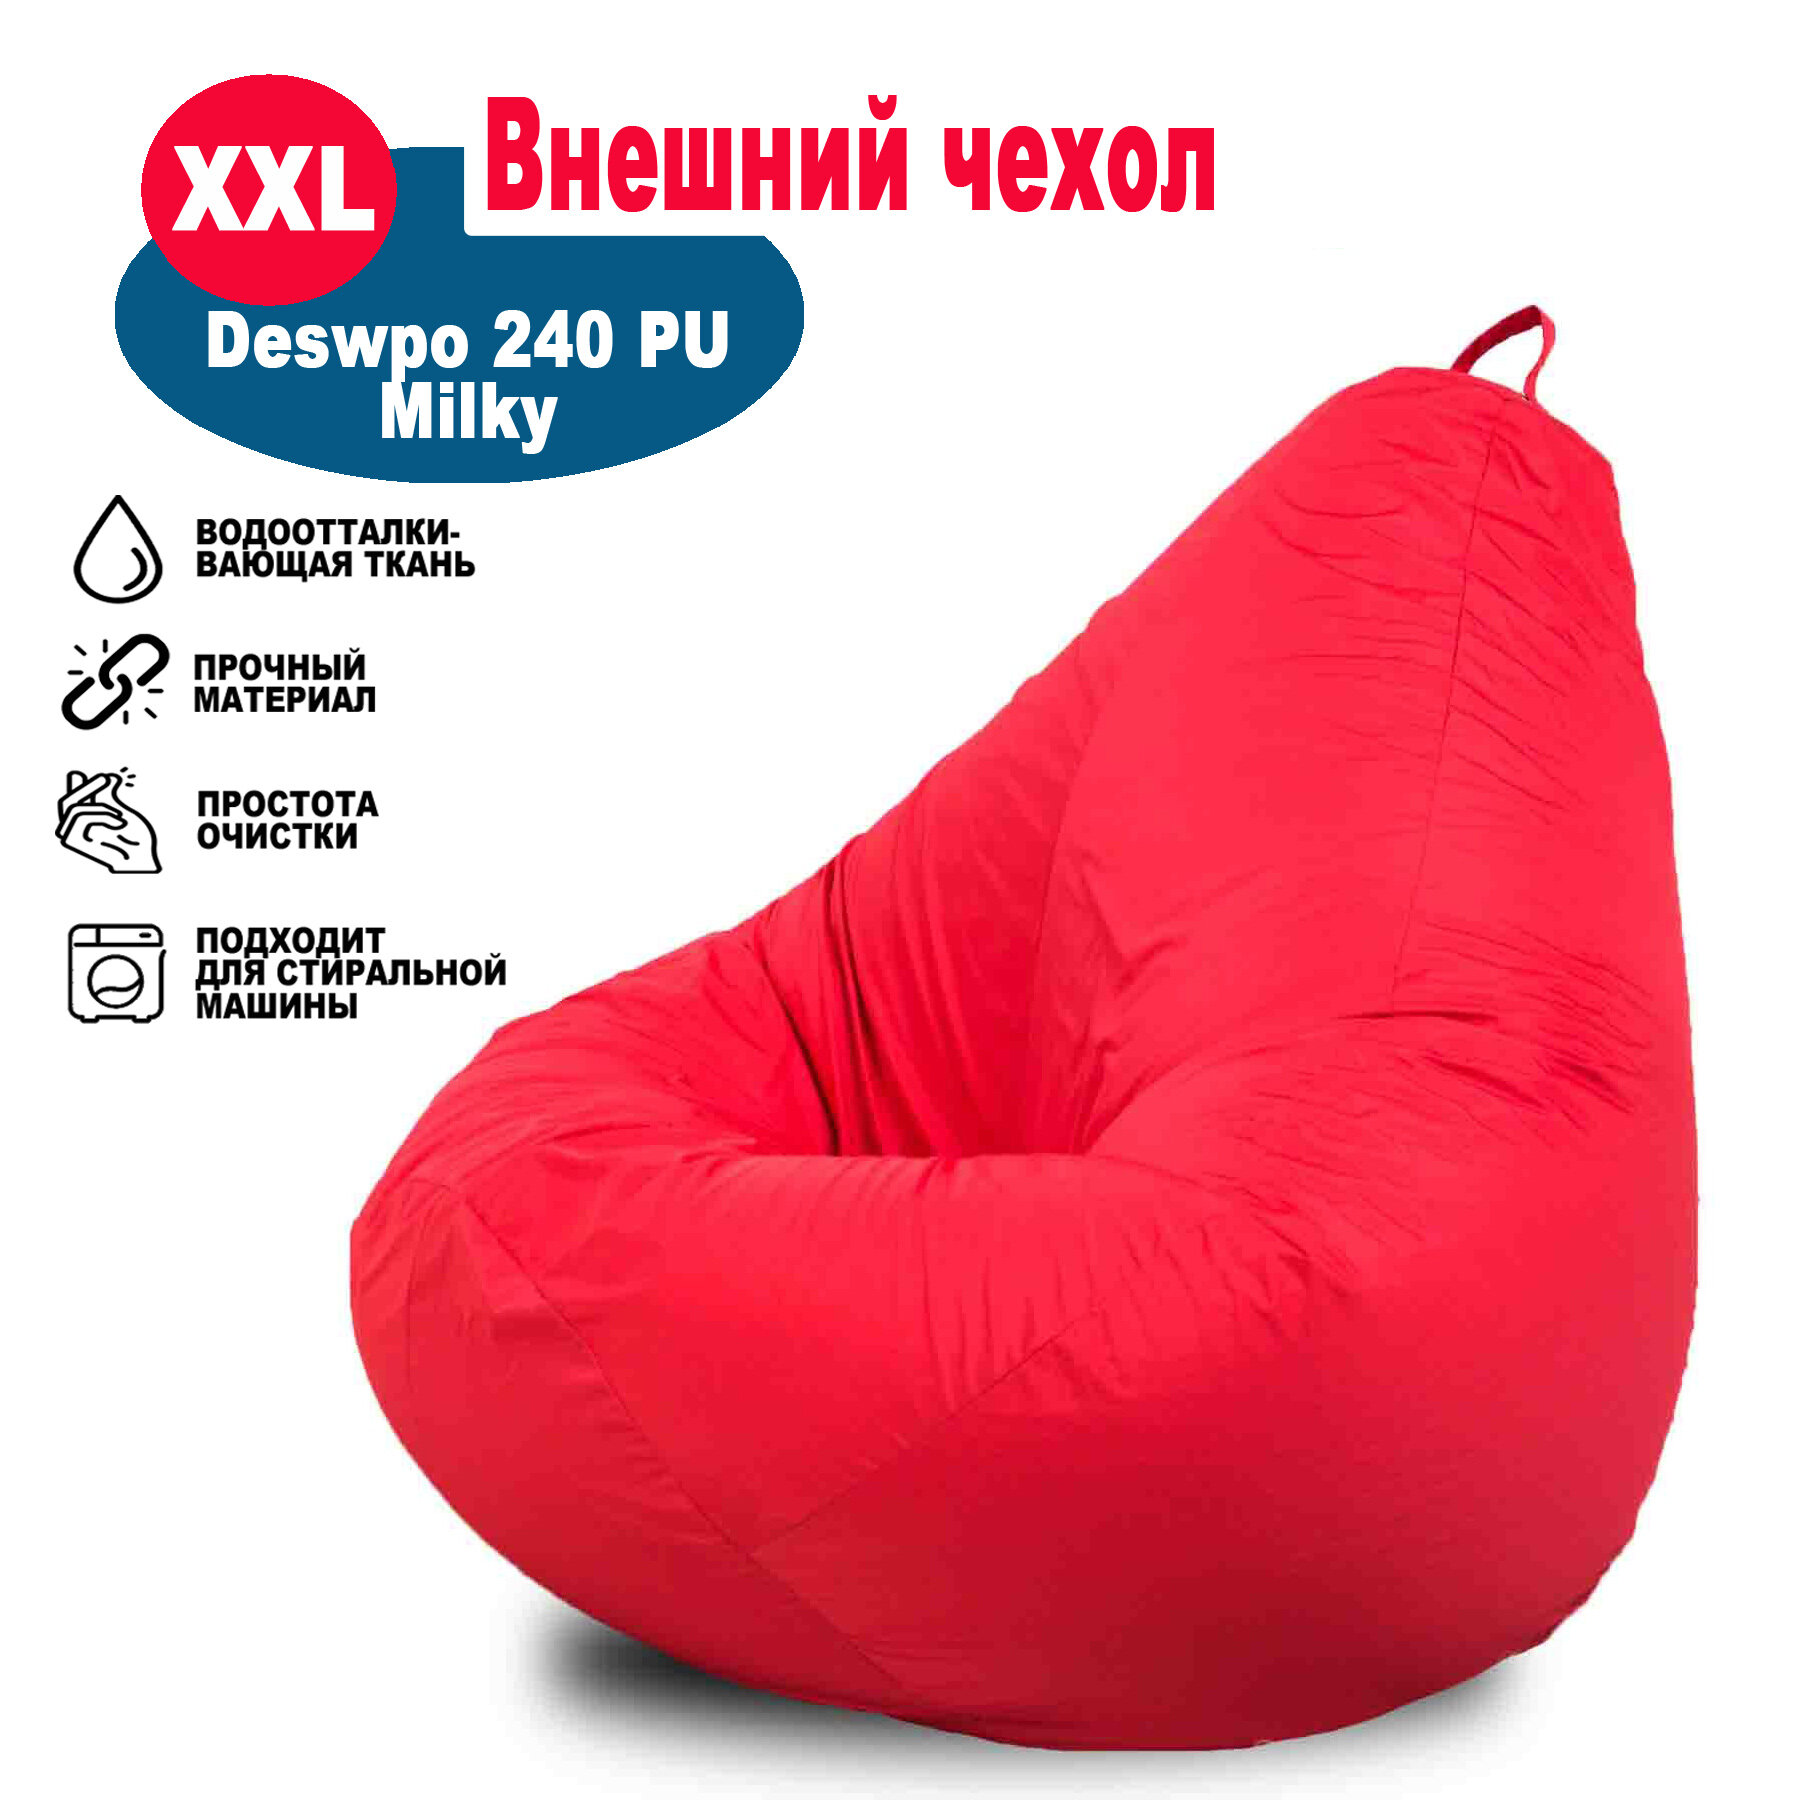 Чехол красный внешний на кресло мешок высотой 120см Kreslo-Igrushka Груша xxl Дюспо